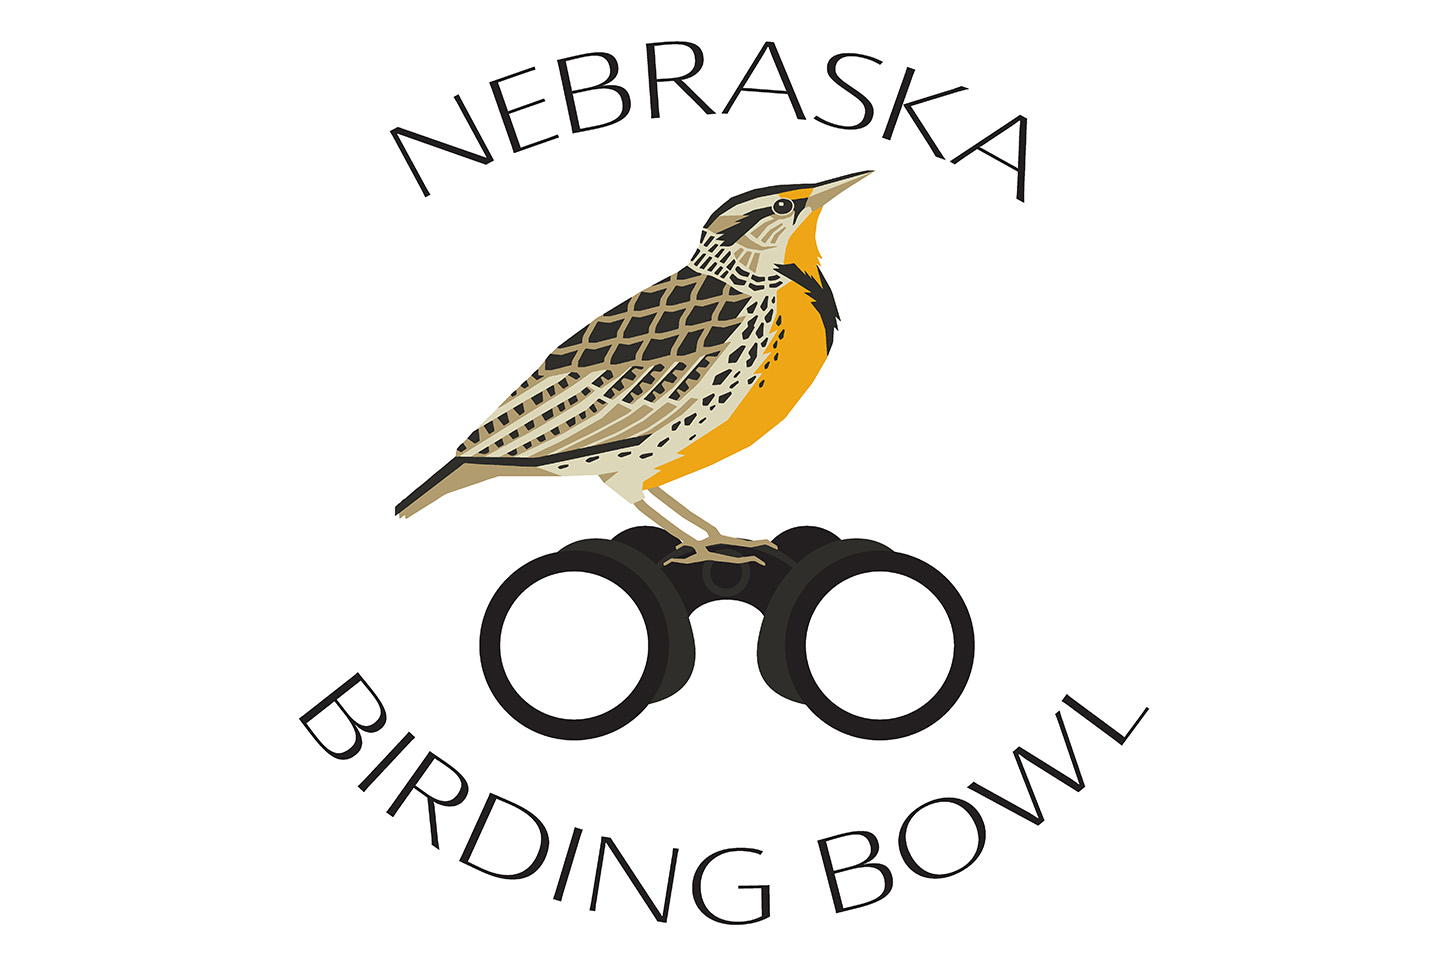 Read More: Nebraska Birding Bowl